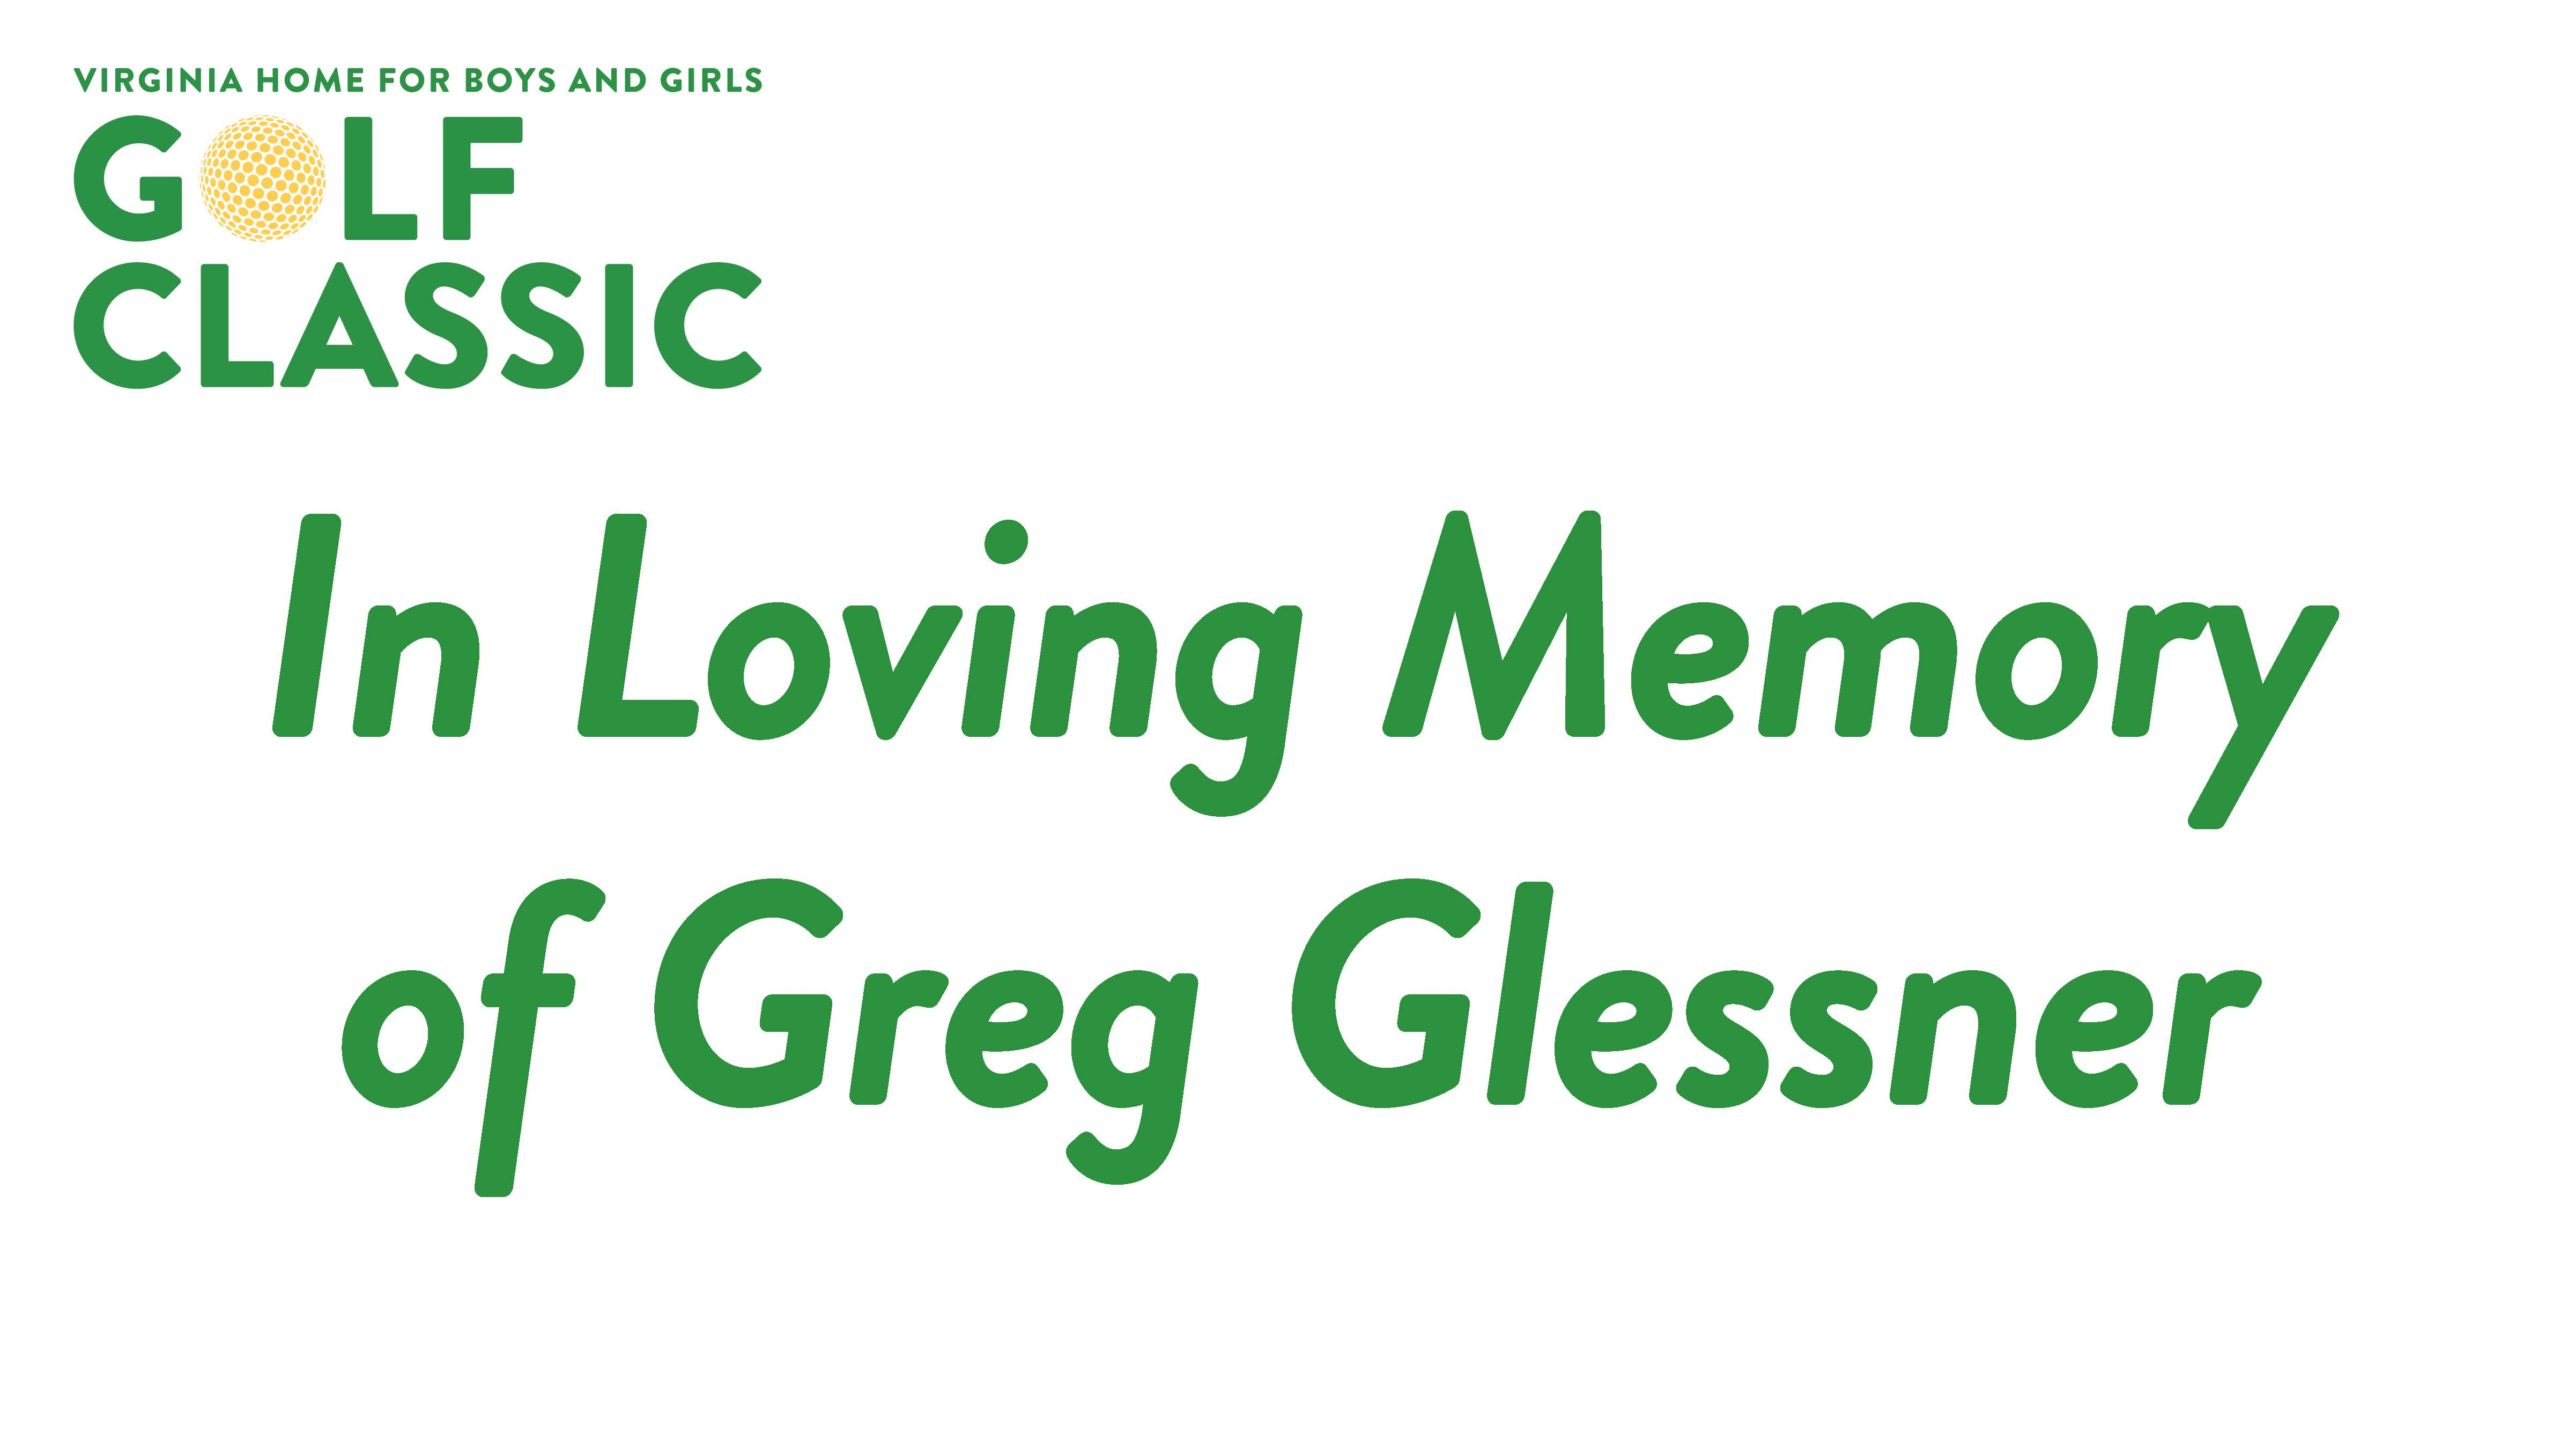 Greg Glessner